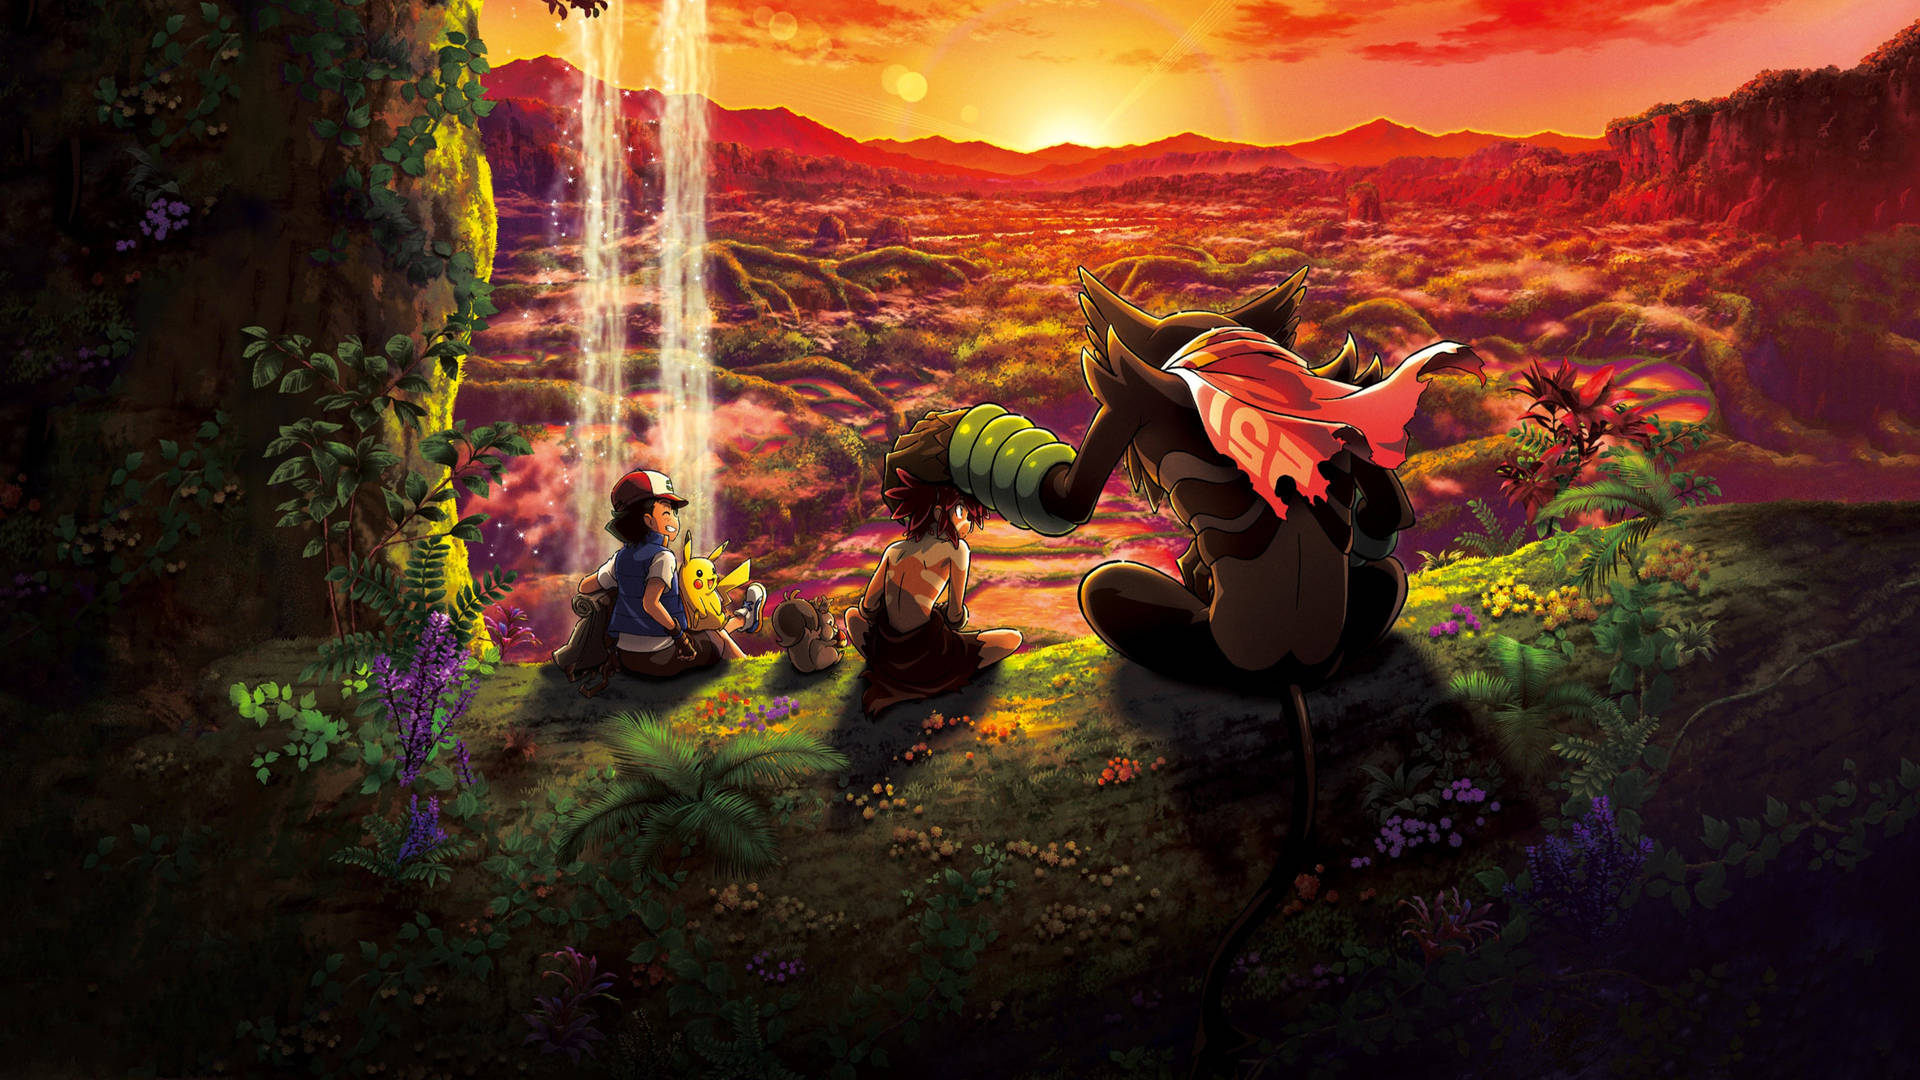 Zarude Ash Koko Pikachu Movie Wallpaper